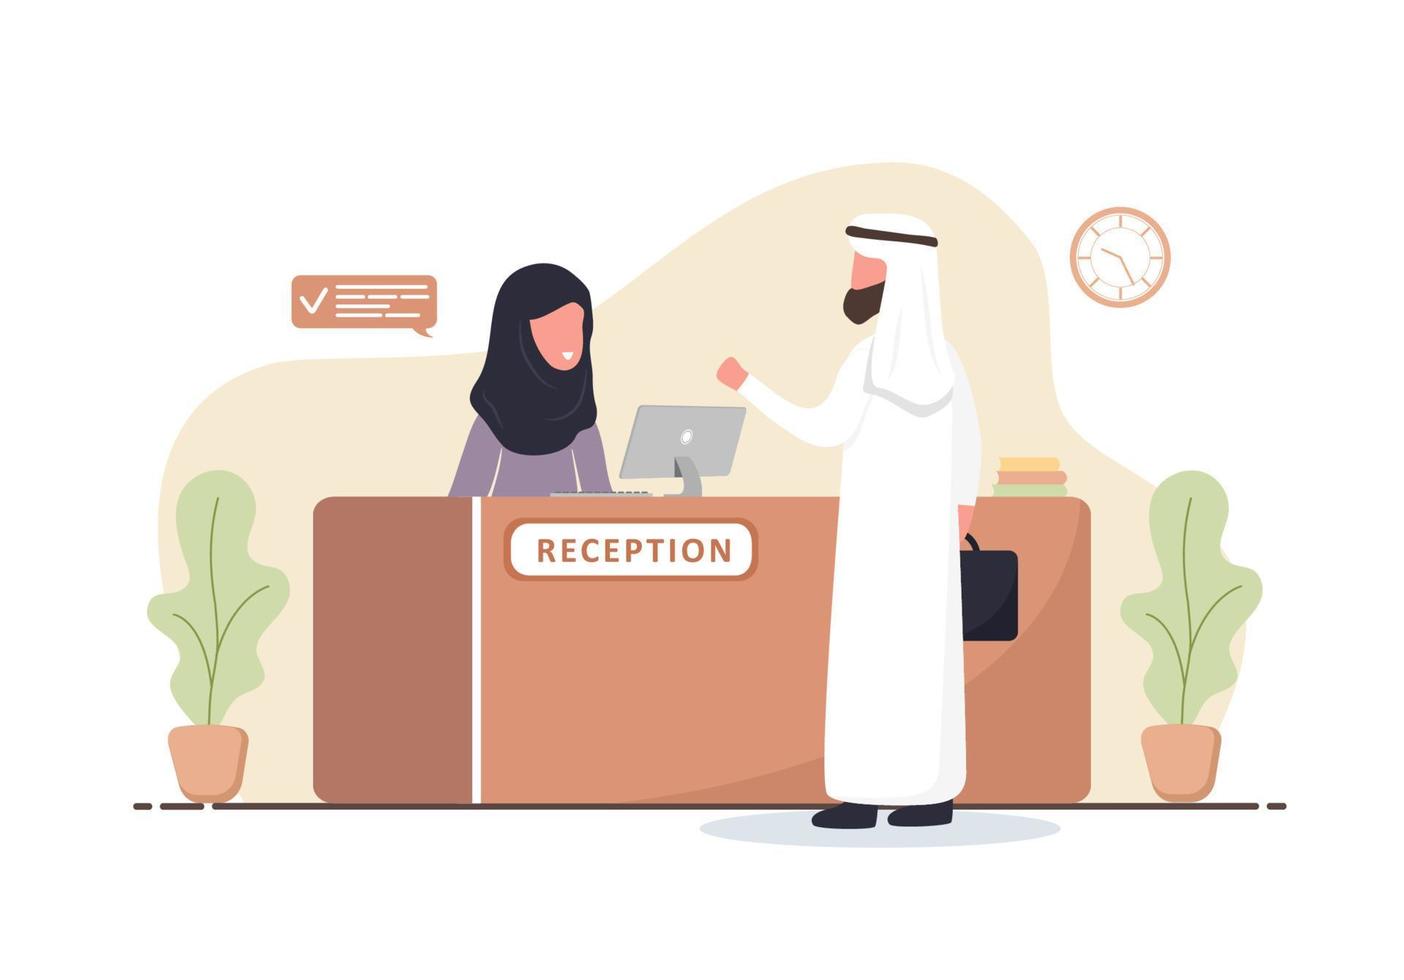 interno della reception. receptionist donna araba in hijab. uomo arabo alla reception. prenotazione di hotel, clinica, registrazione in aeroporto, concetto di reception di banca o ufficio. illustrazione vettoriale piatta del fumetto.